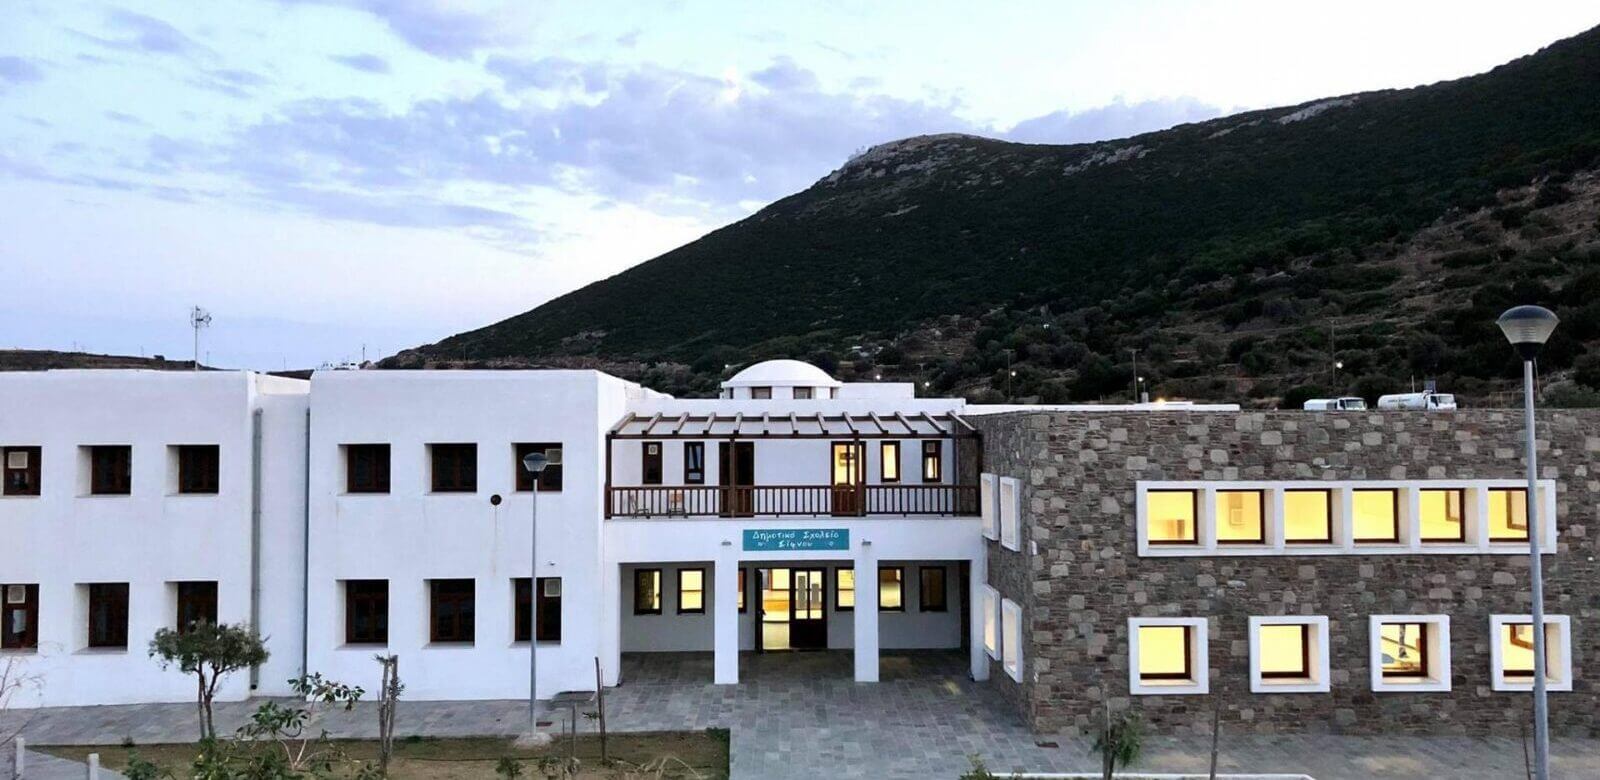 Υπέροχα νέα: Αναβαθμίζεται δημοτικό σχολείο στη Σίφνο με δωρεά από το Ίδρυμα Ευγενίδη